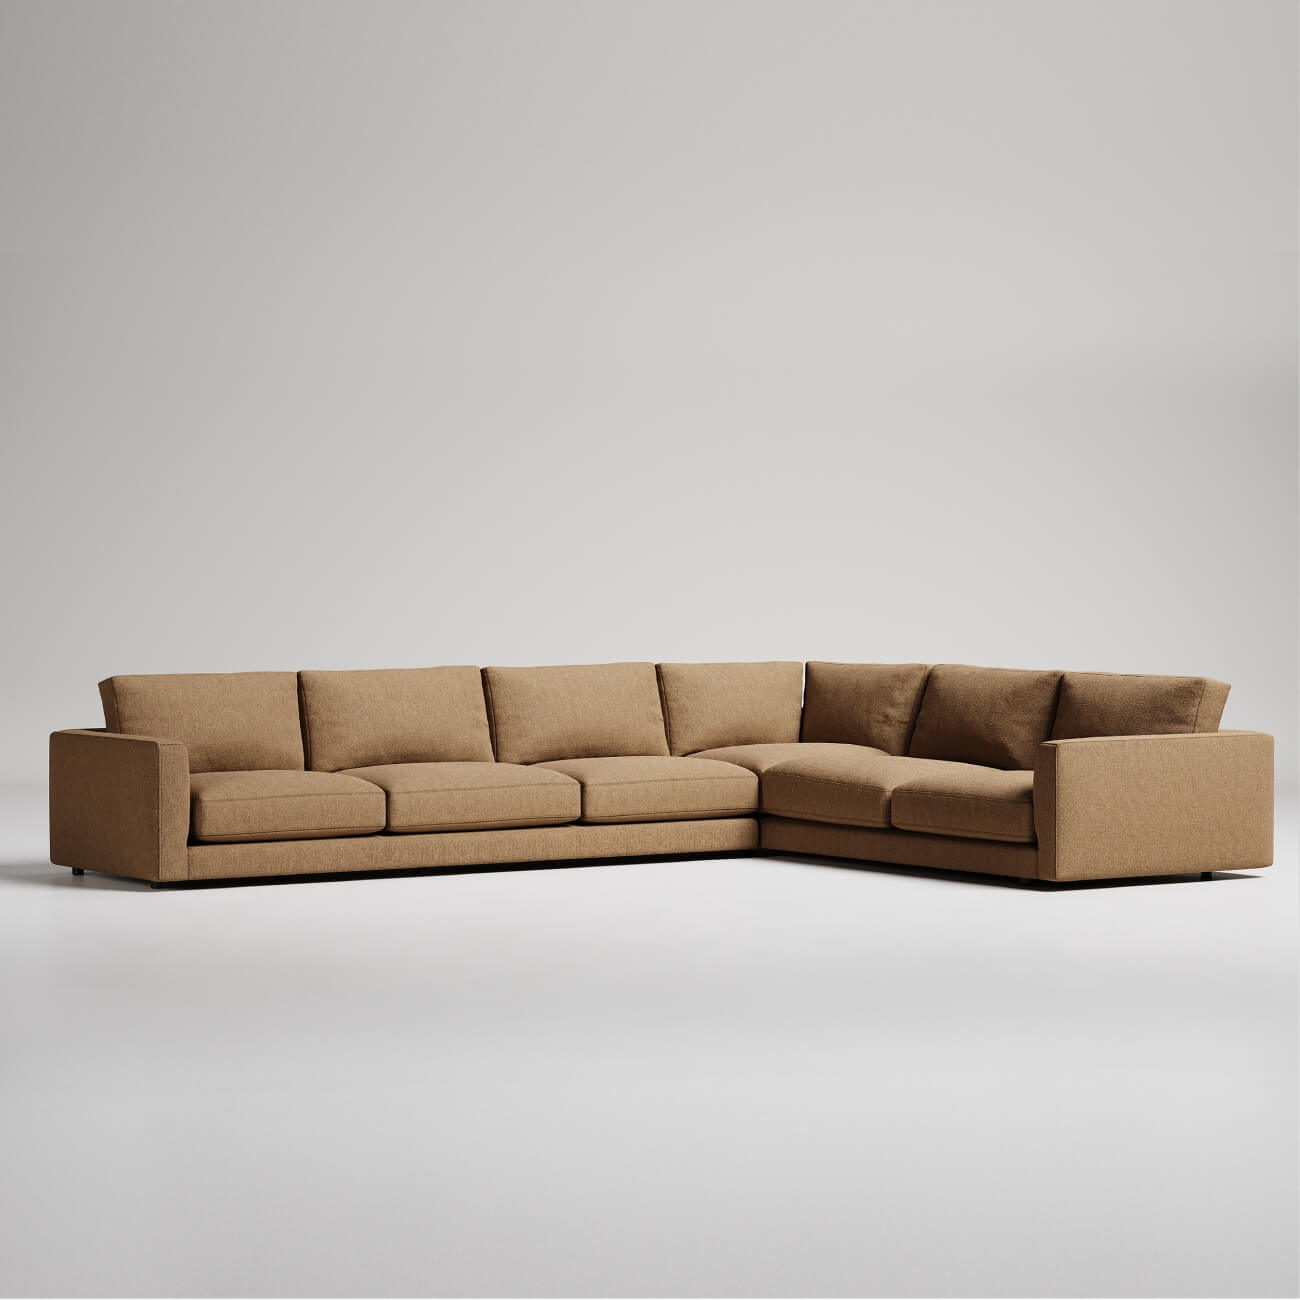 Large tan modular sofa